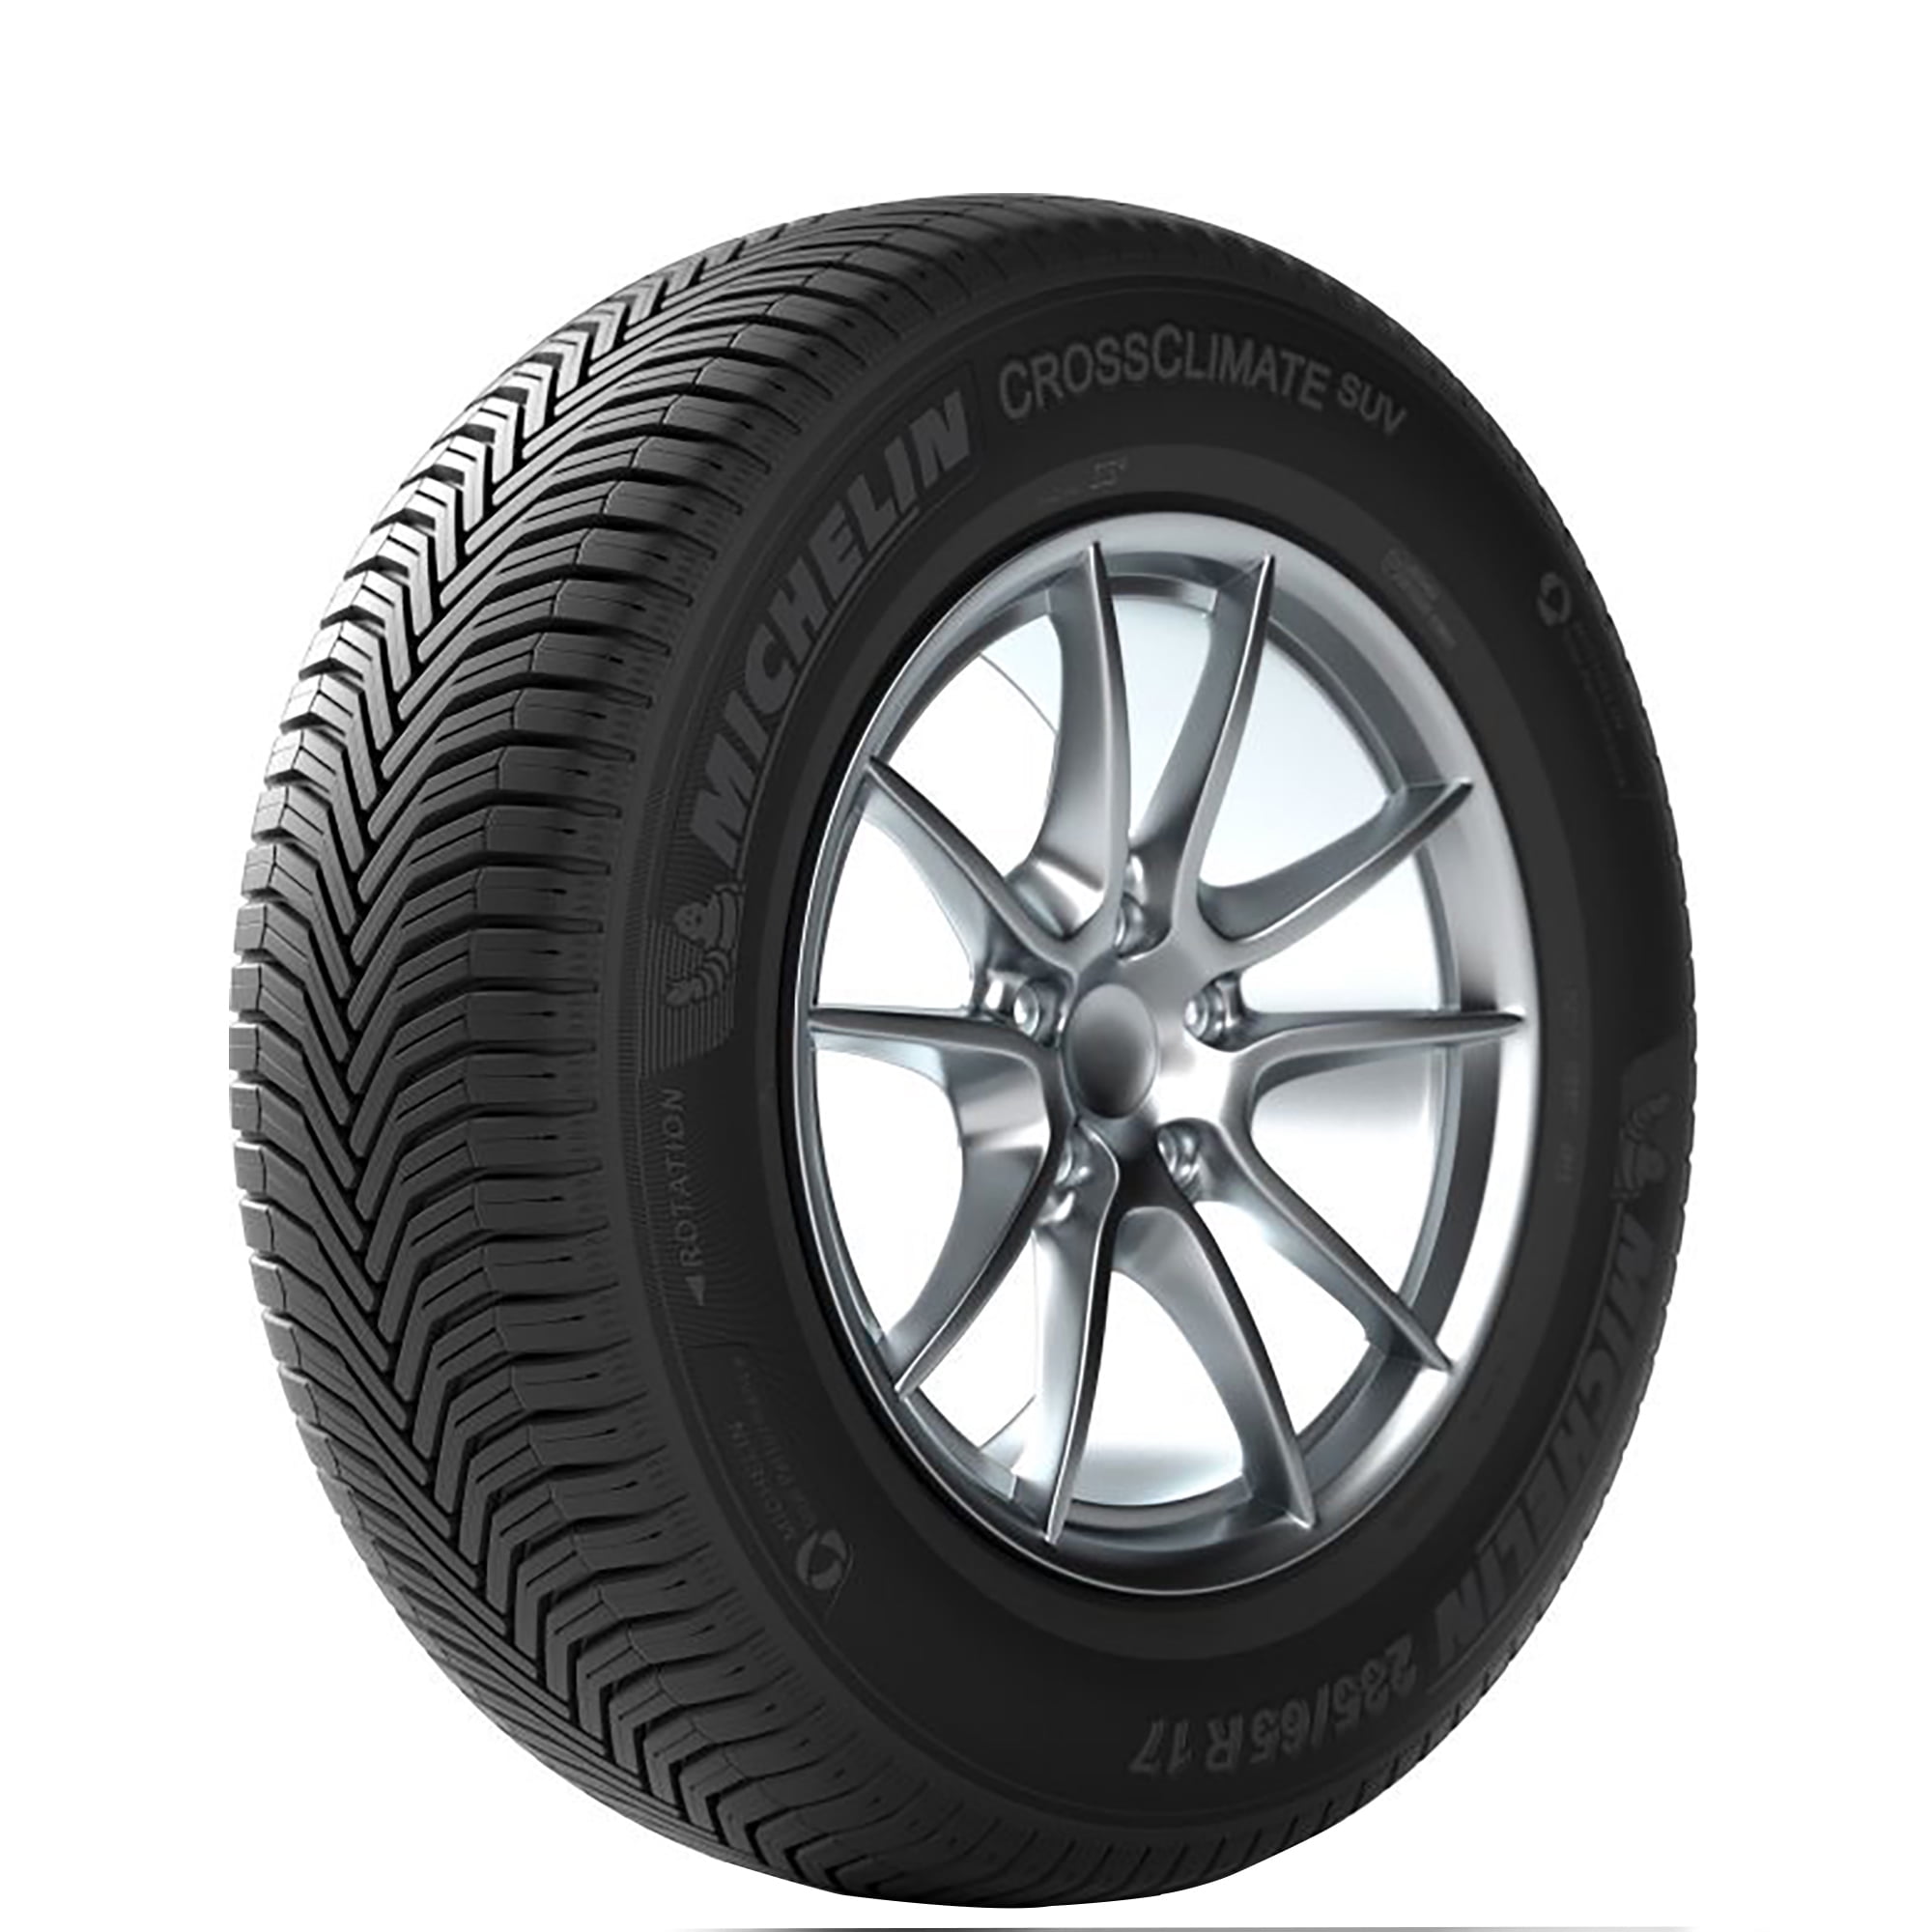 Michelin CrossClimate SUV 235/65-17 104 V Tire